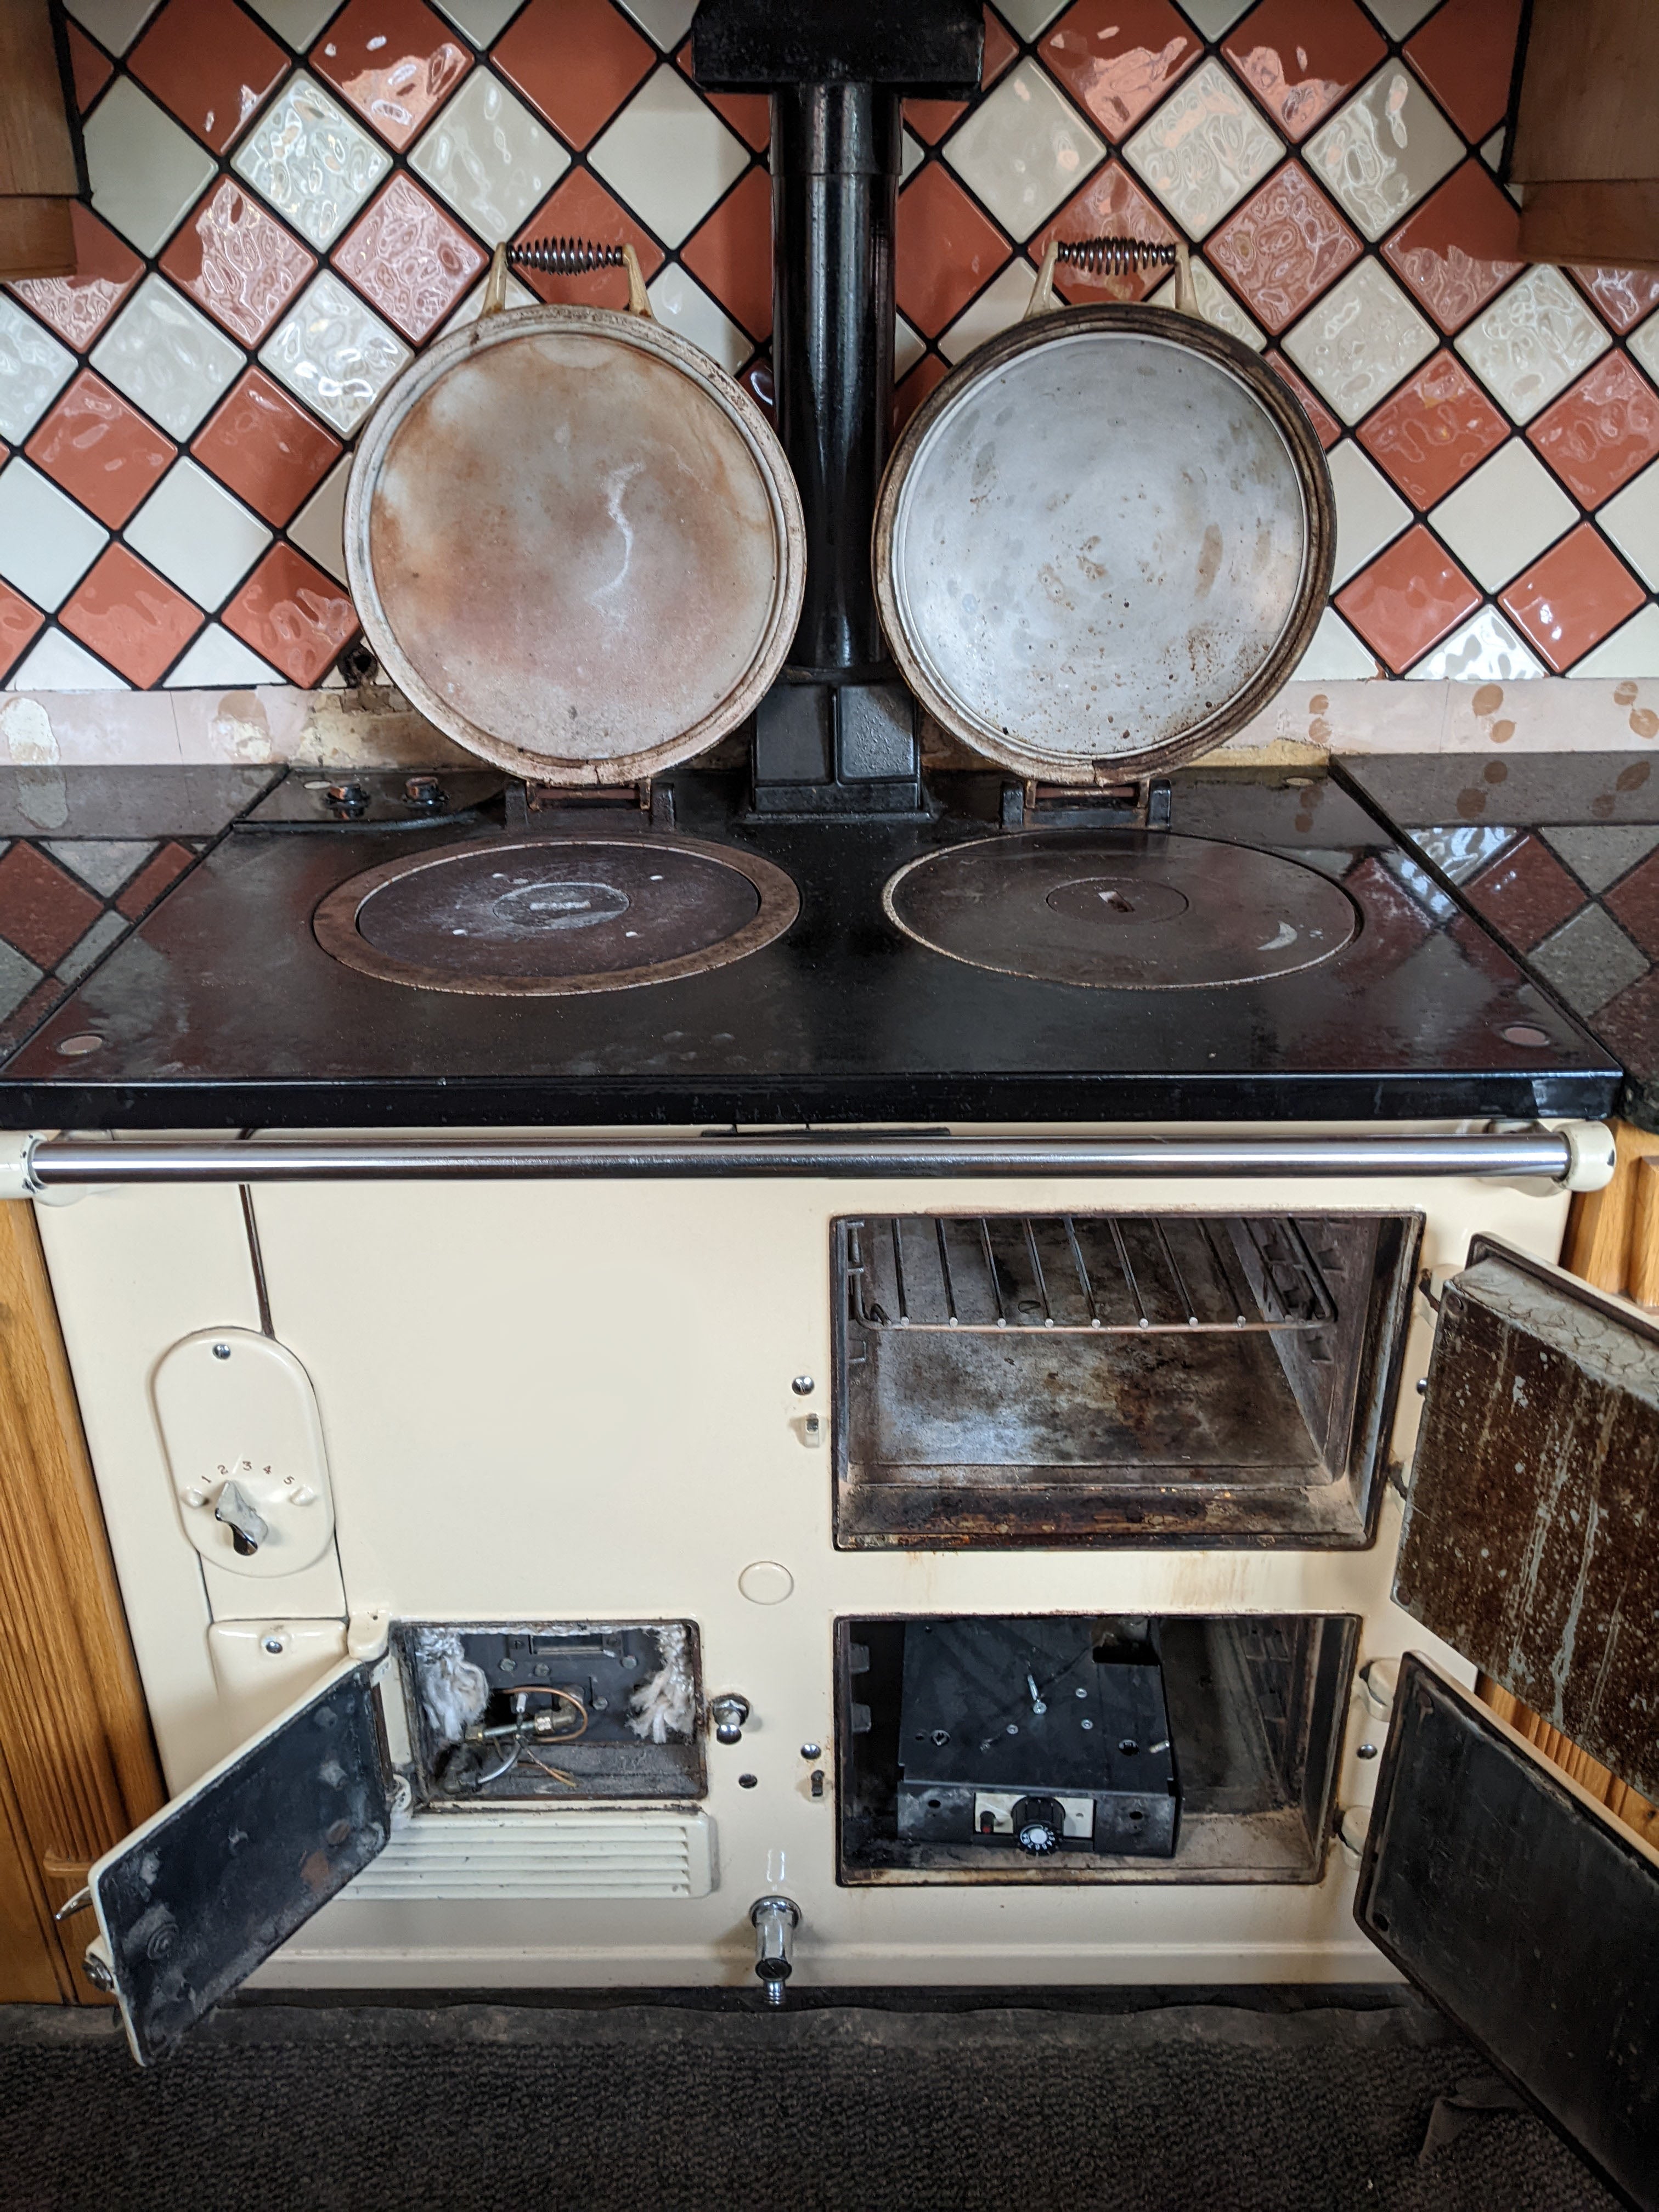 2 oven standard Aga range cooker